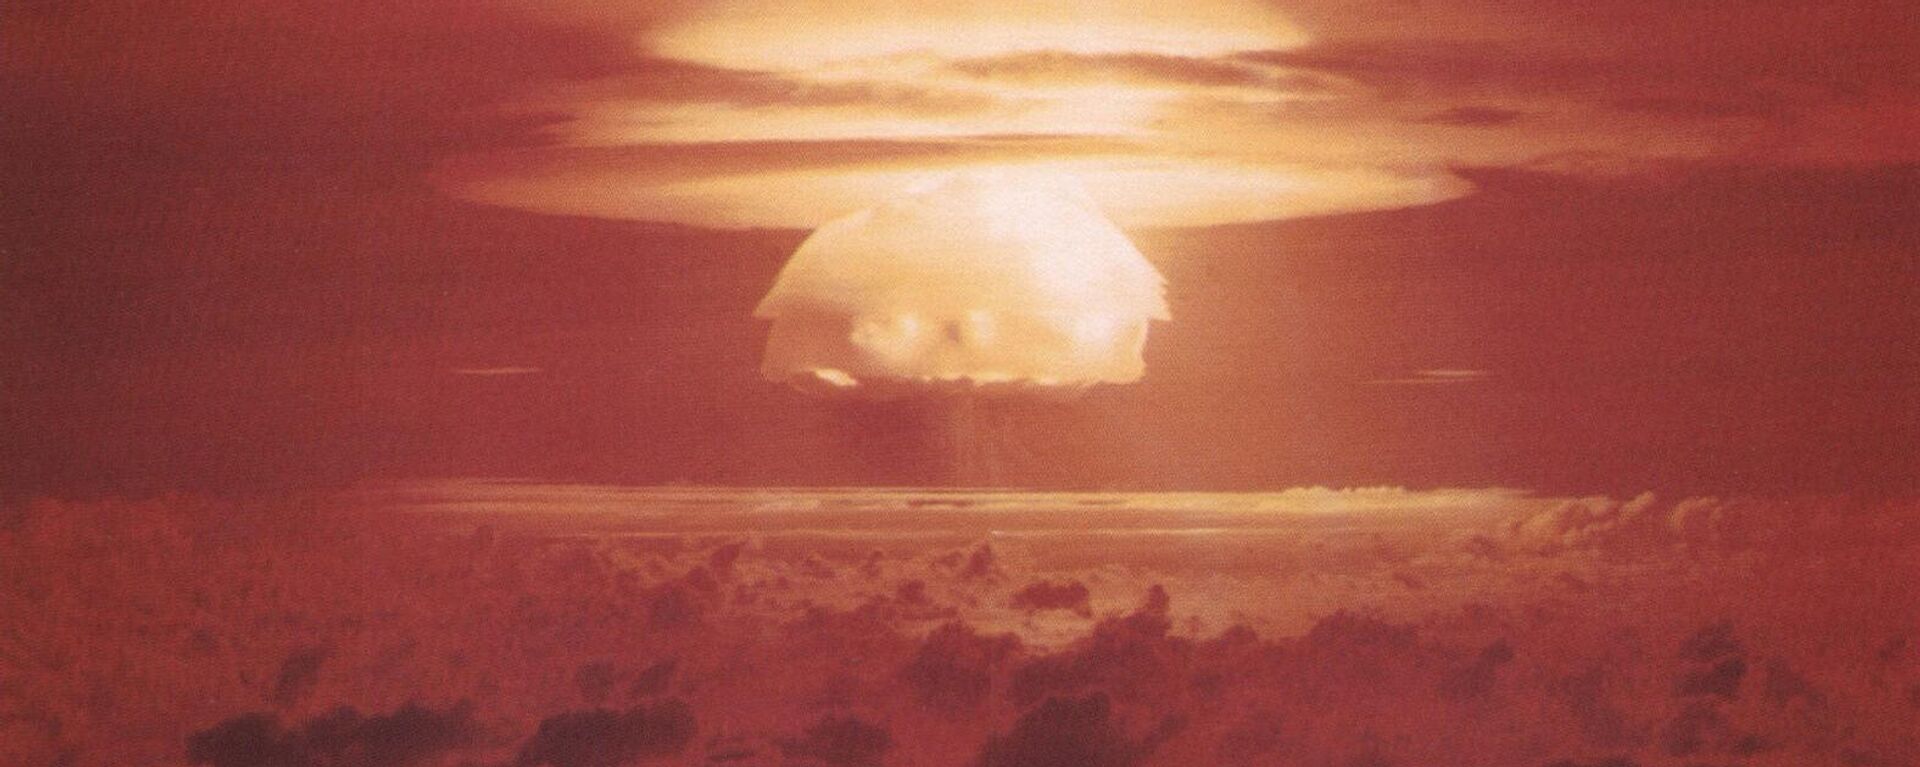 Испытание ядерного оружия Браво (мощность 15 тонн) на атолле Бикини. - Sputnik Армения, 1920, 21.02.2022